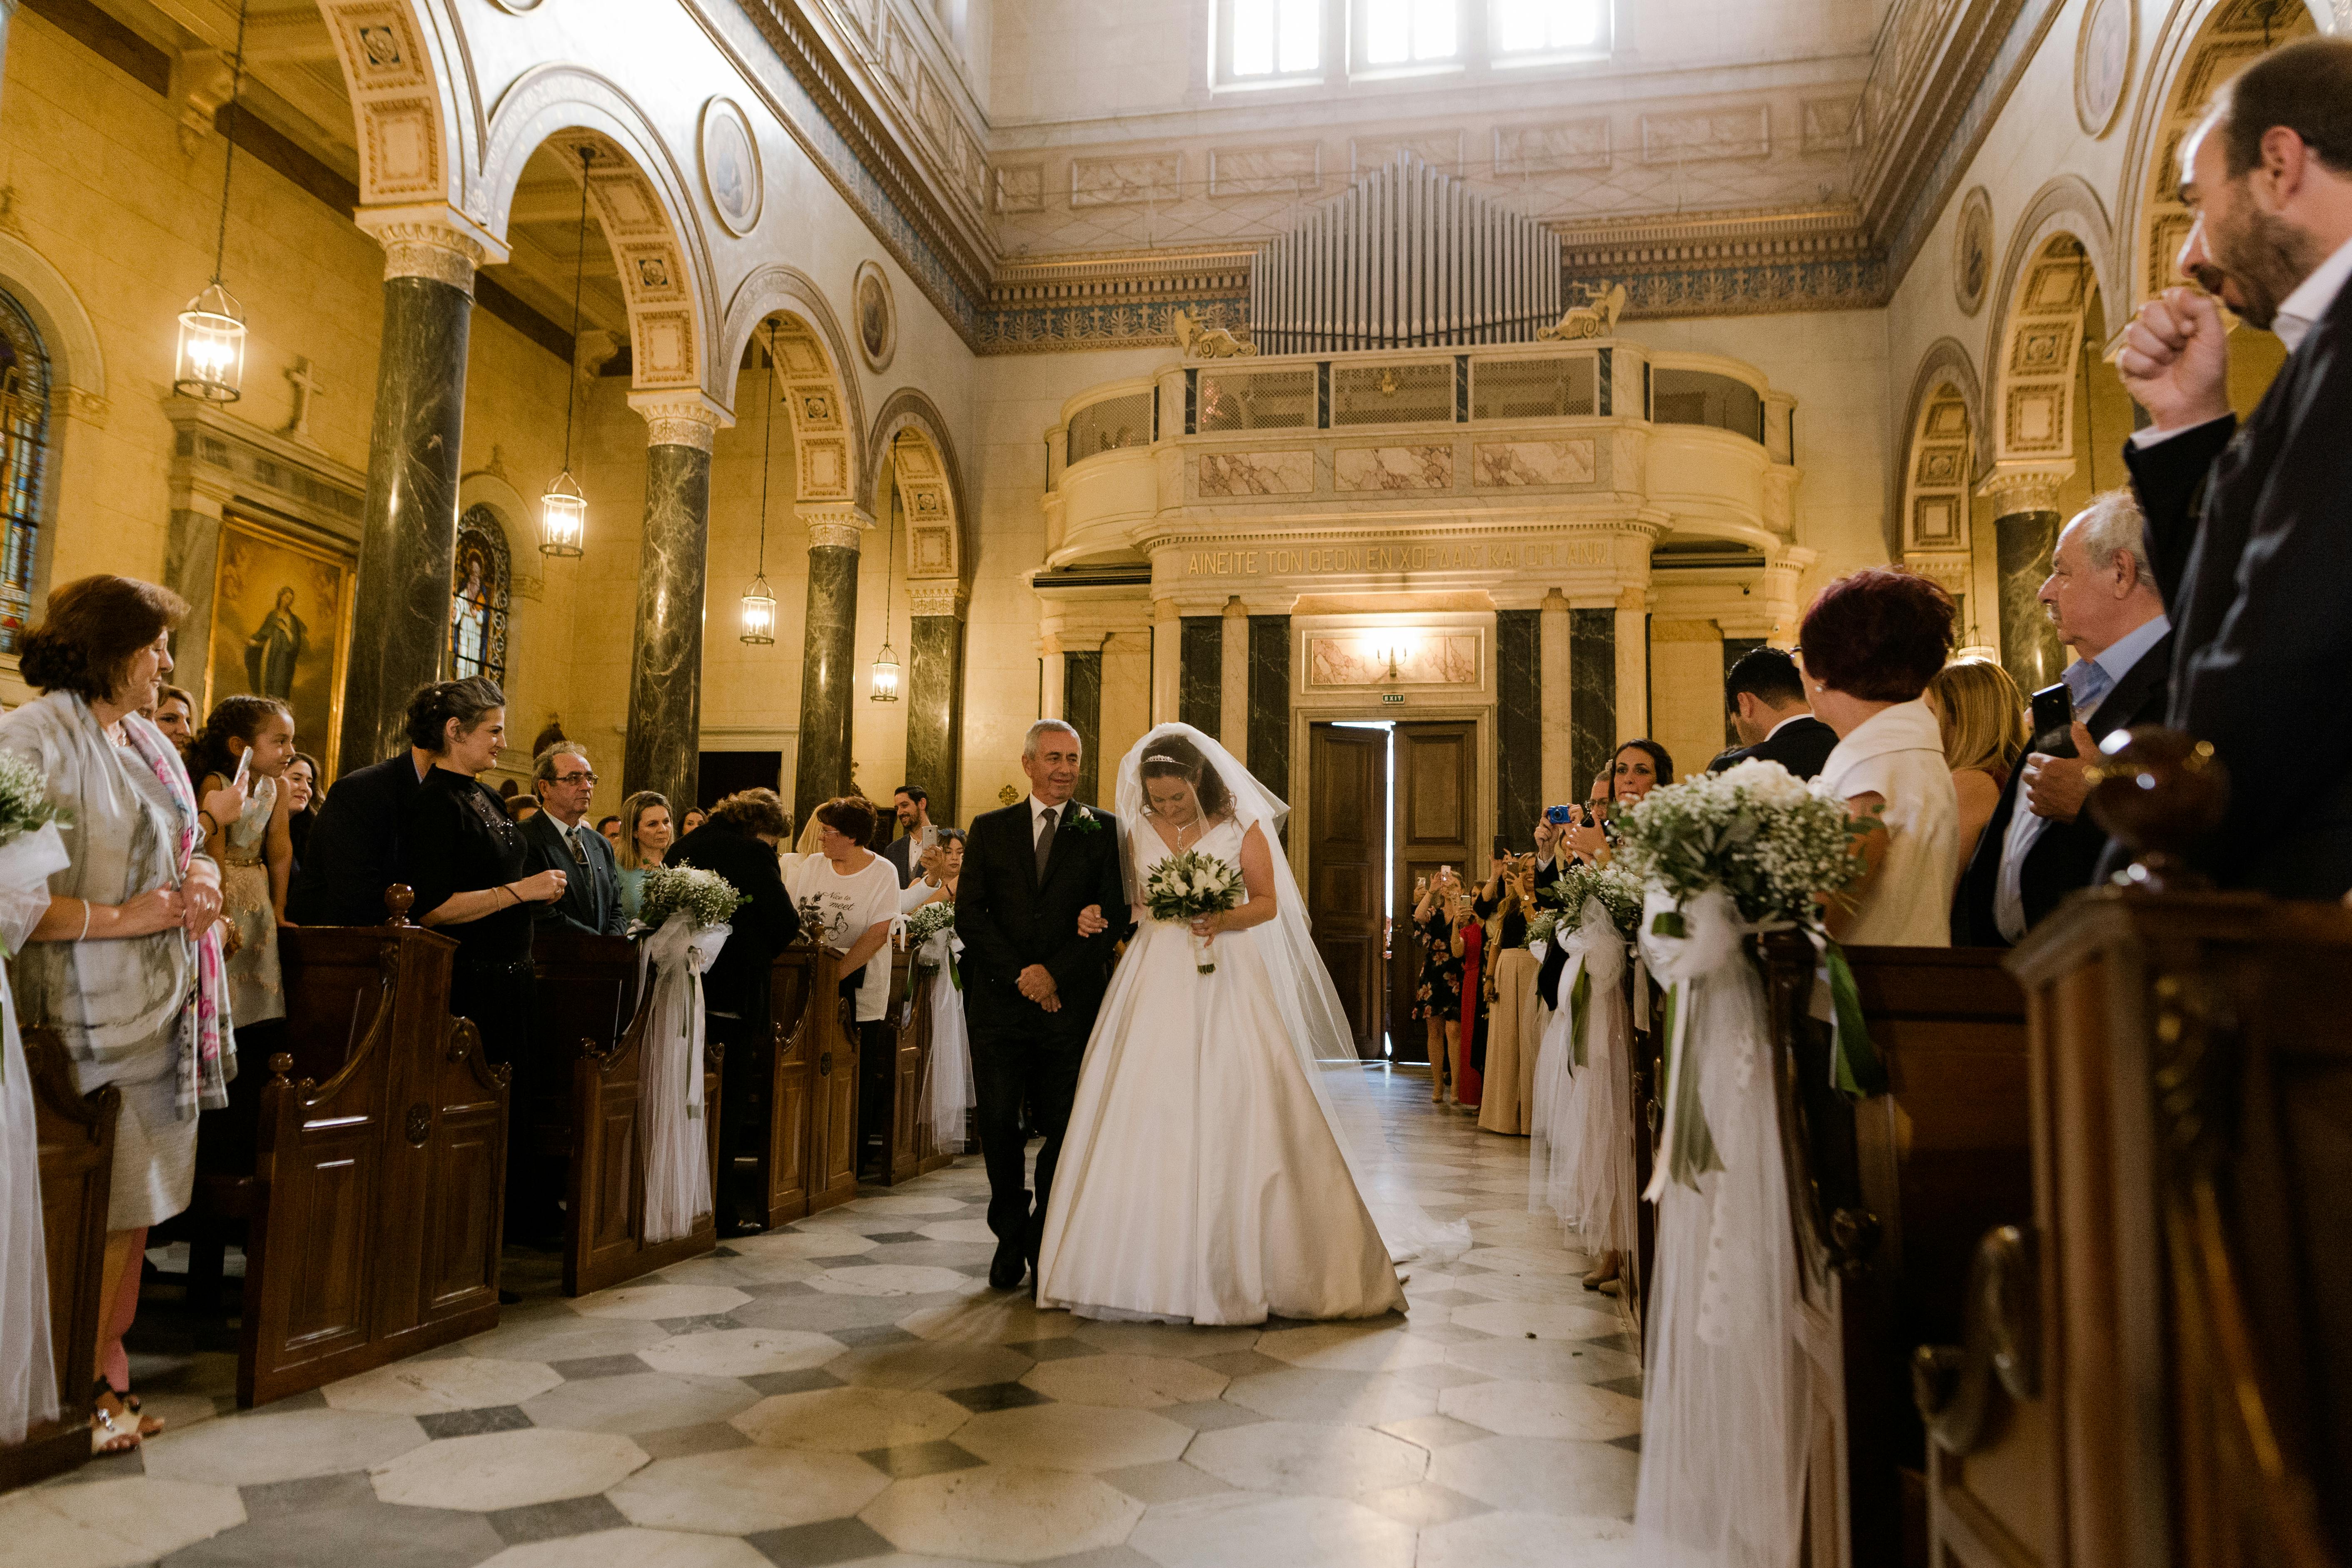 Un hombre acompaña a una novia por el pasillo de una iglesia | Fuente: Pexels